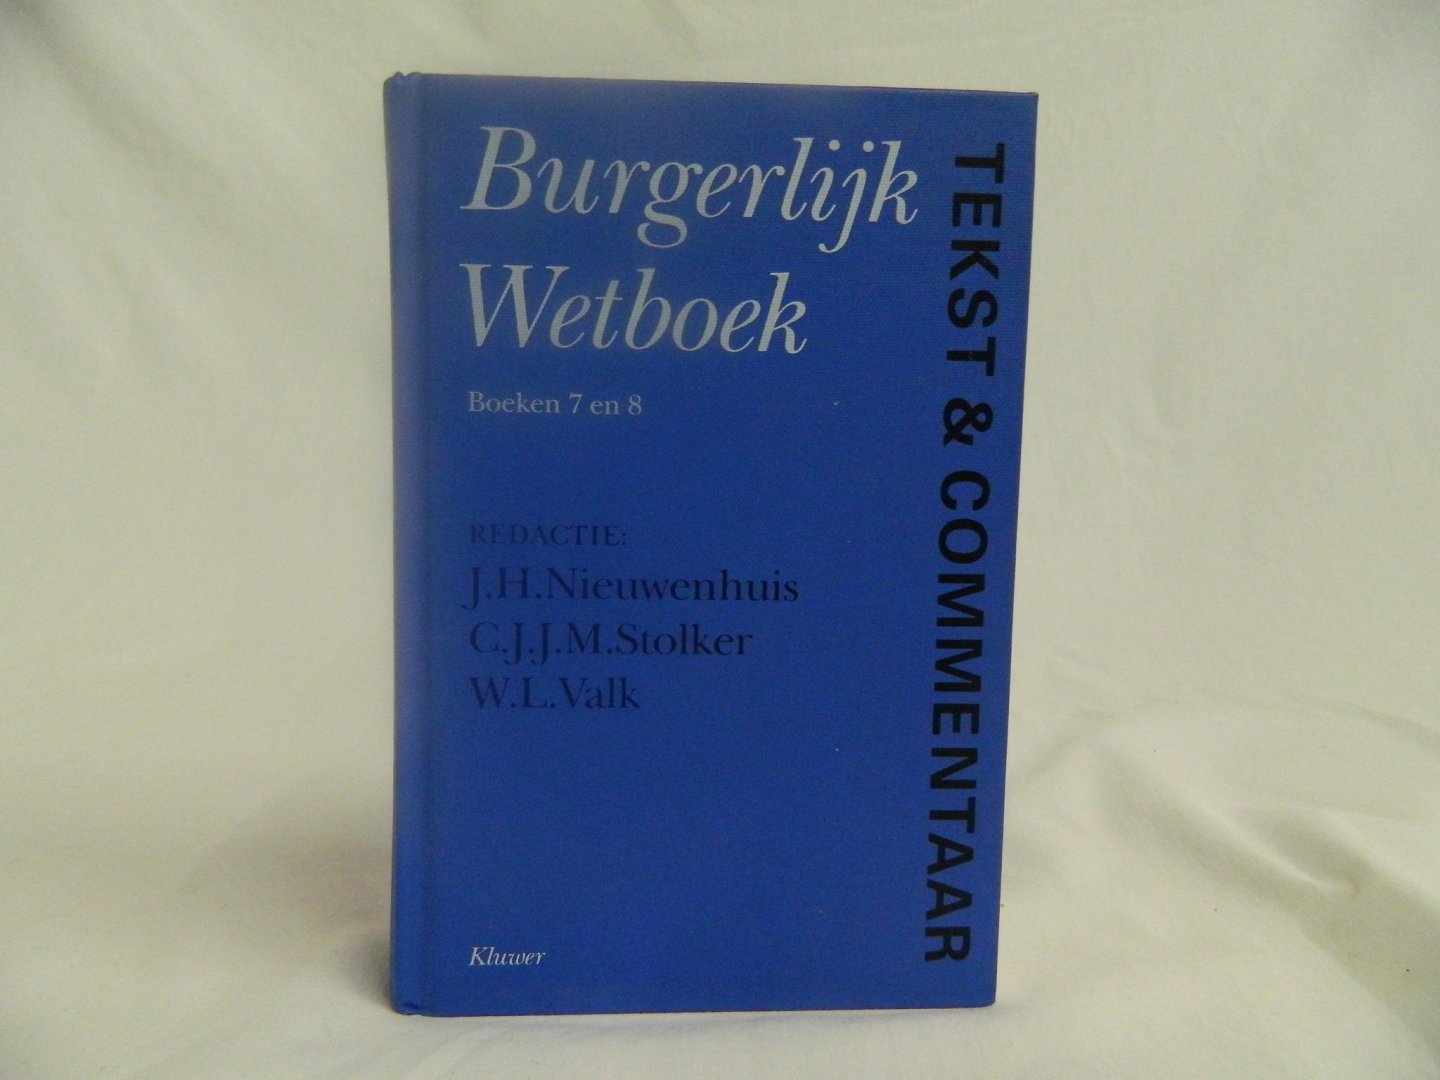 Nieuwenhuis, J.H. / Stolker, C.J.J.M. / Valk, W.L. - Burgerlijk wetboek: boeken 7 en 8